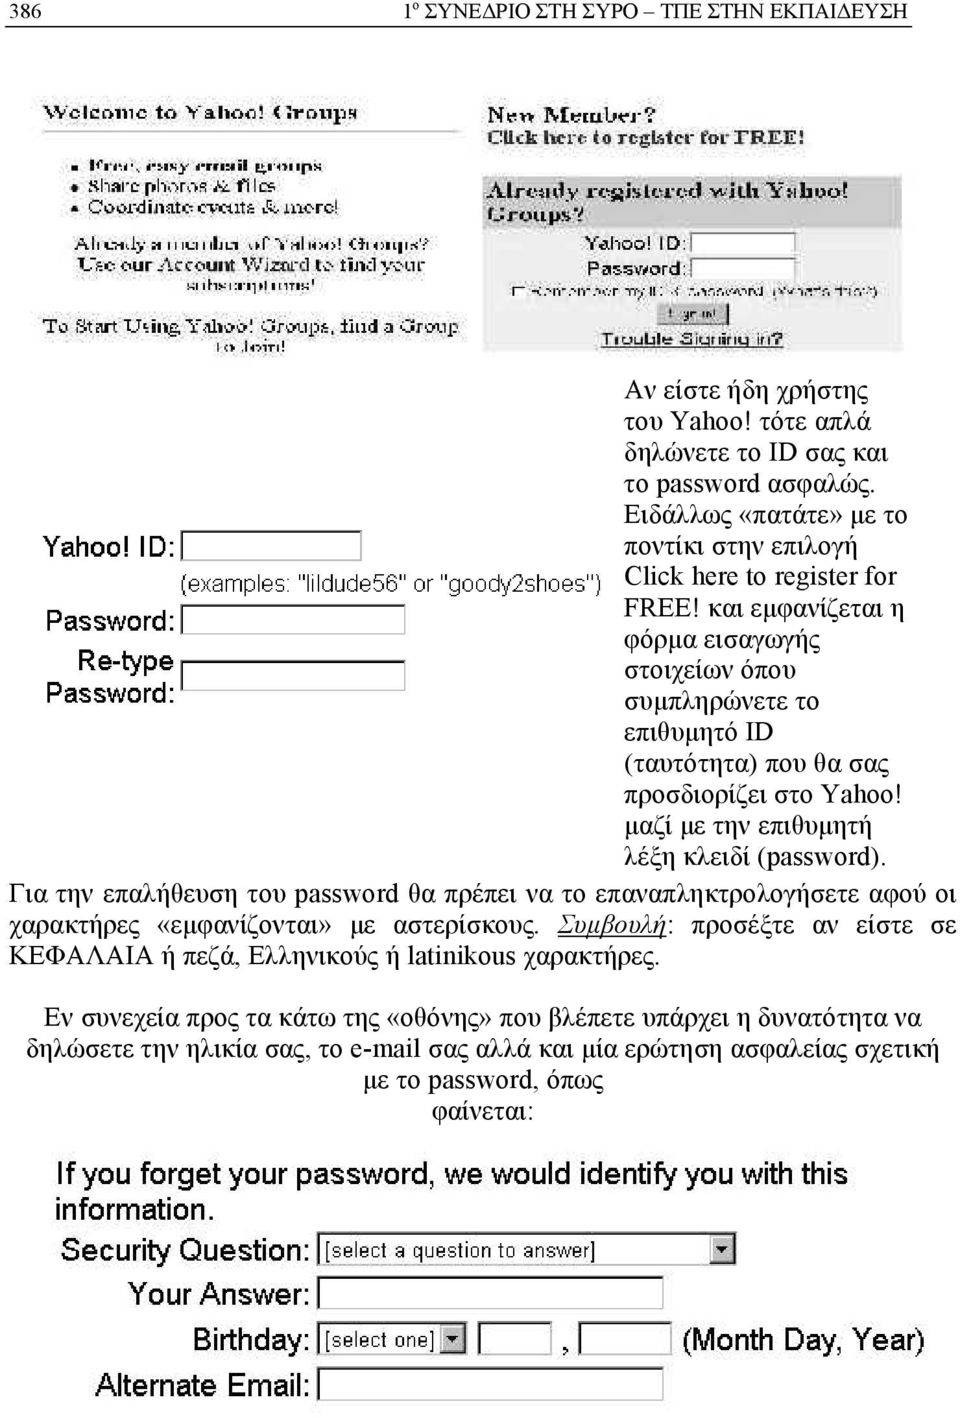 και εμφανίζεται η φόρμα εισαγωγής στοιχείων όπου συμπληρώνετε το επιθυμητό ID (ταυτότητα) που θα σας προσδιορίζει στο Yahoo! μαζί με την επιθυμητή λέξη κλειδί (password).